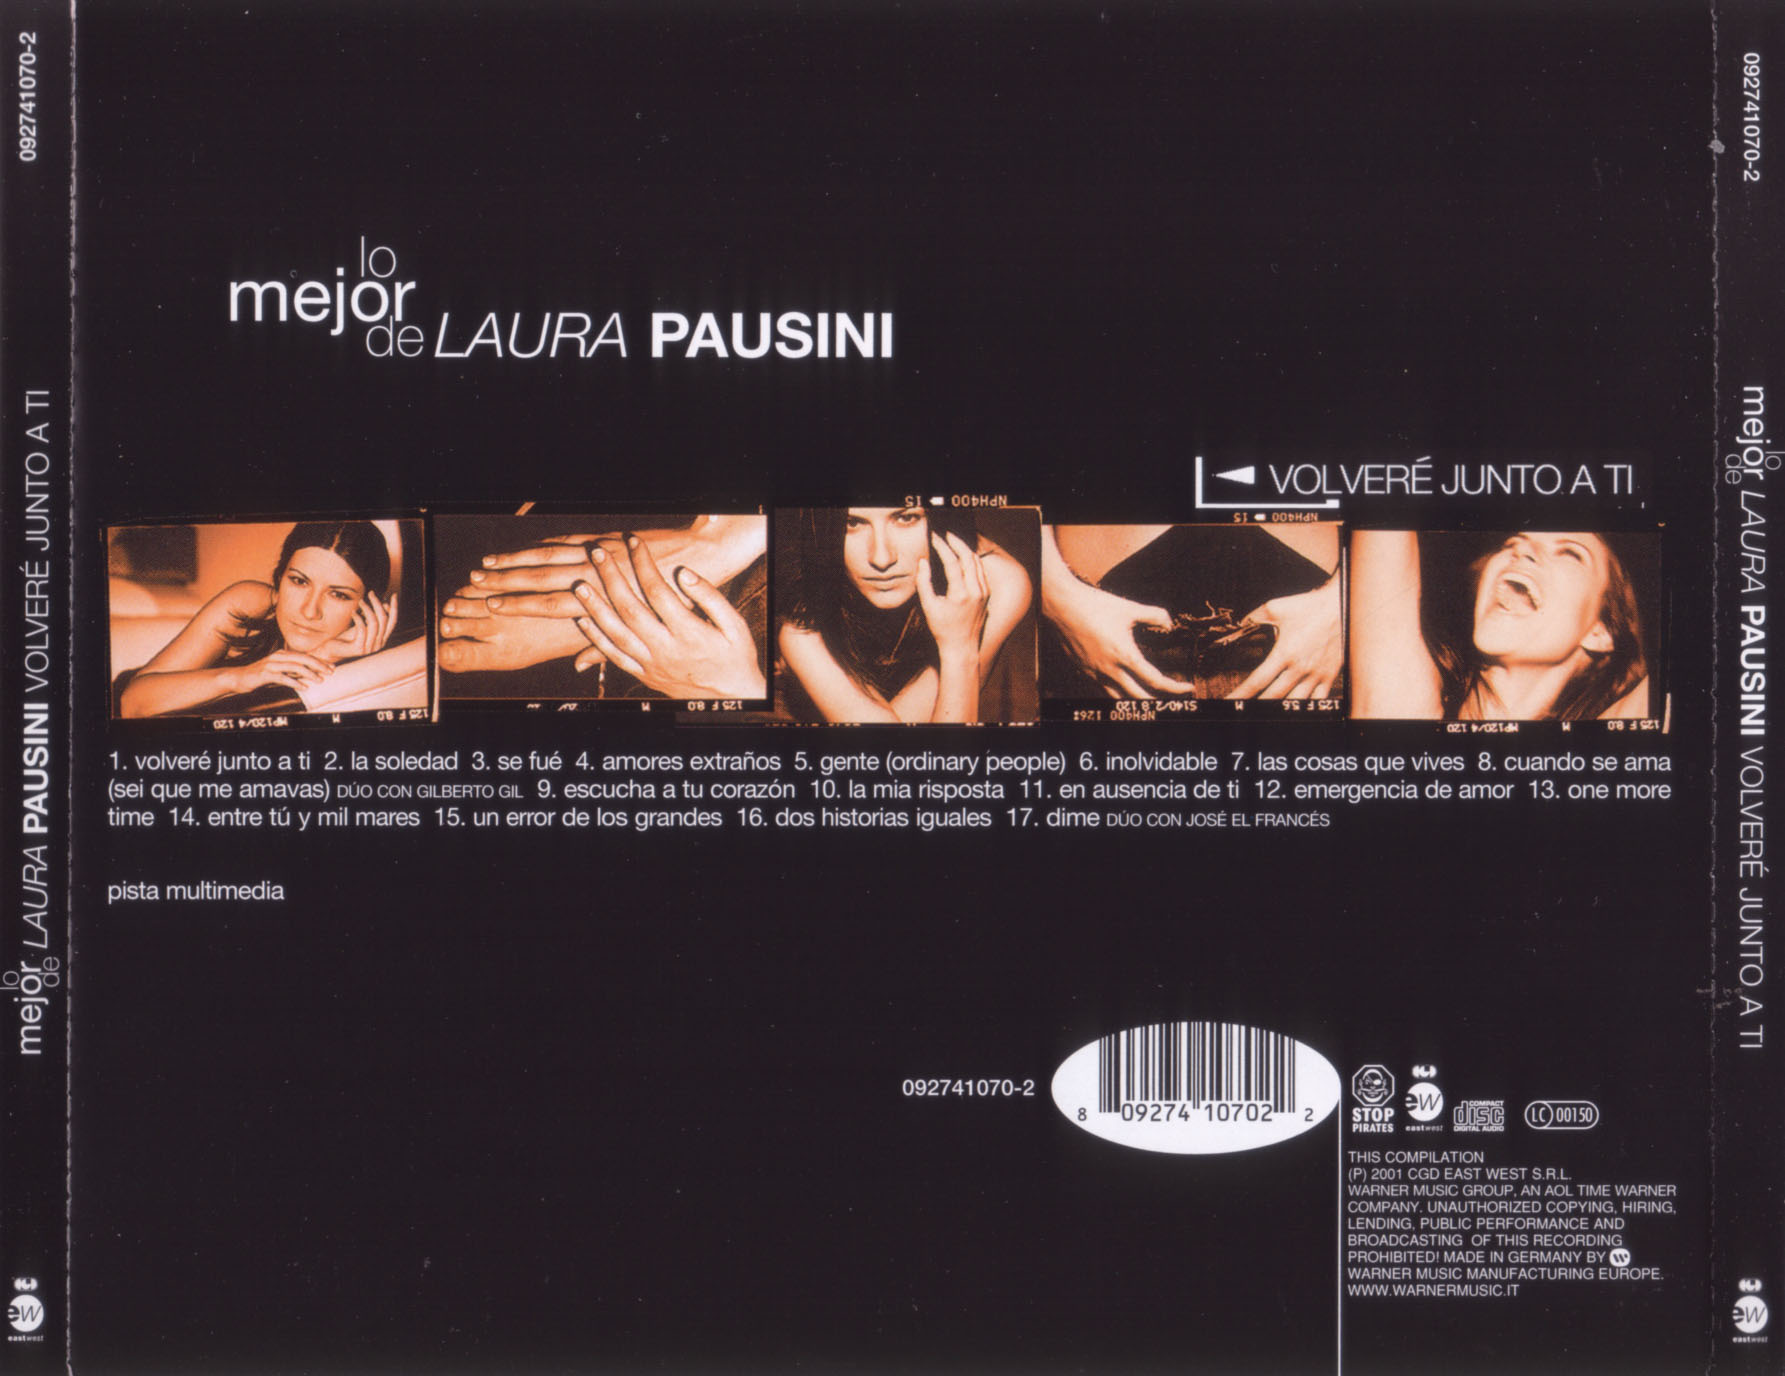 Cartula Trasera de Laura Pausini - Volvere Junto A Ti (Lo Mejor De Laura Pausini)